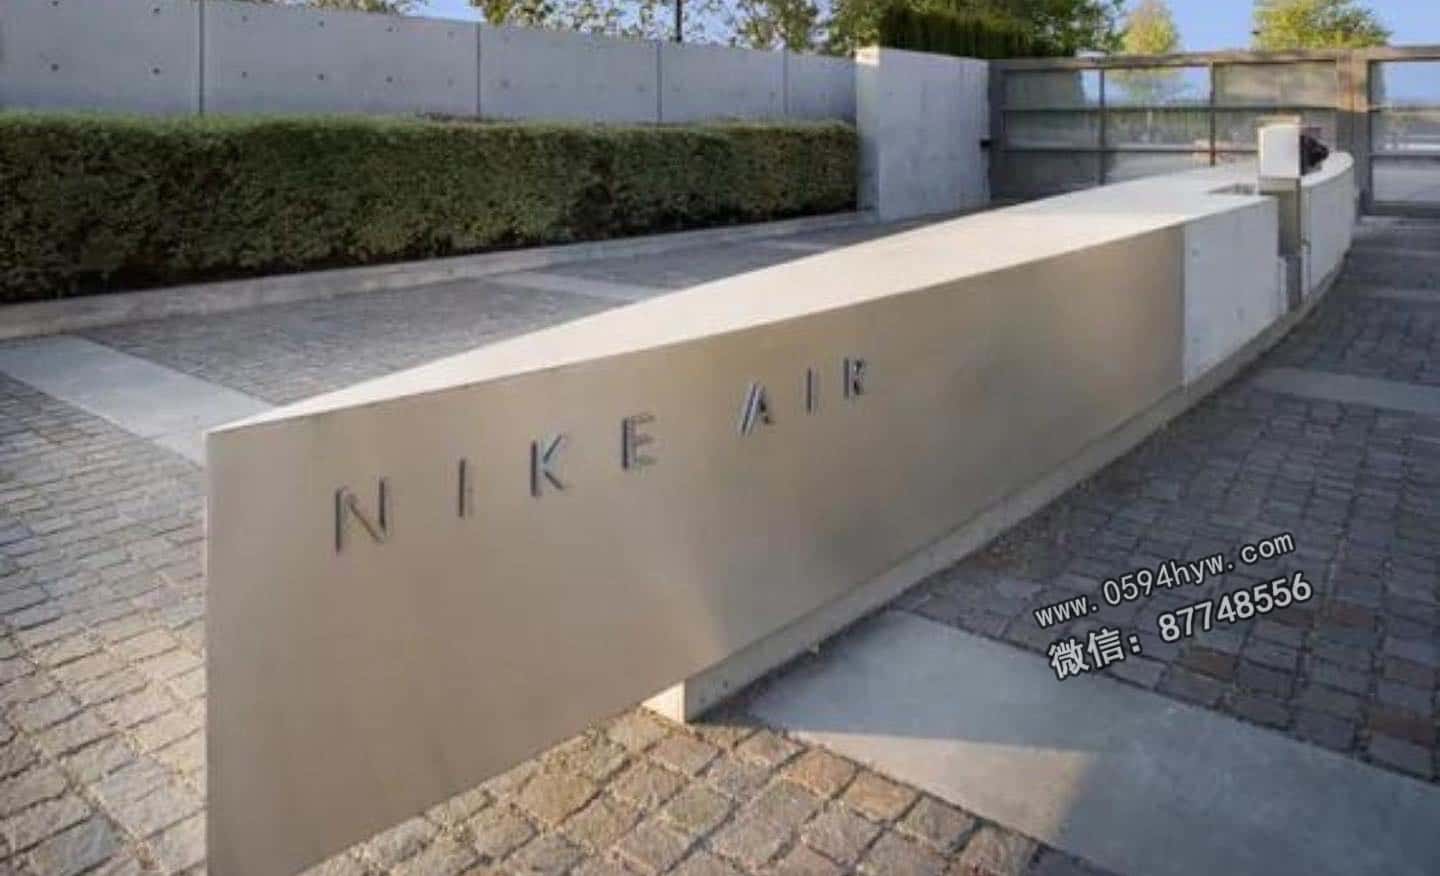 球衣, NIKE, 2023, 07 - 网友称Nike在机场价格过高：贵得难以承受！